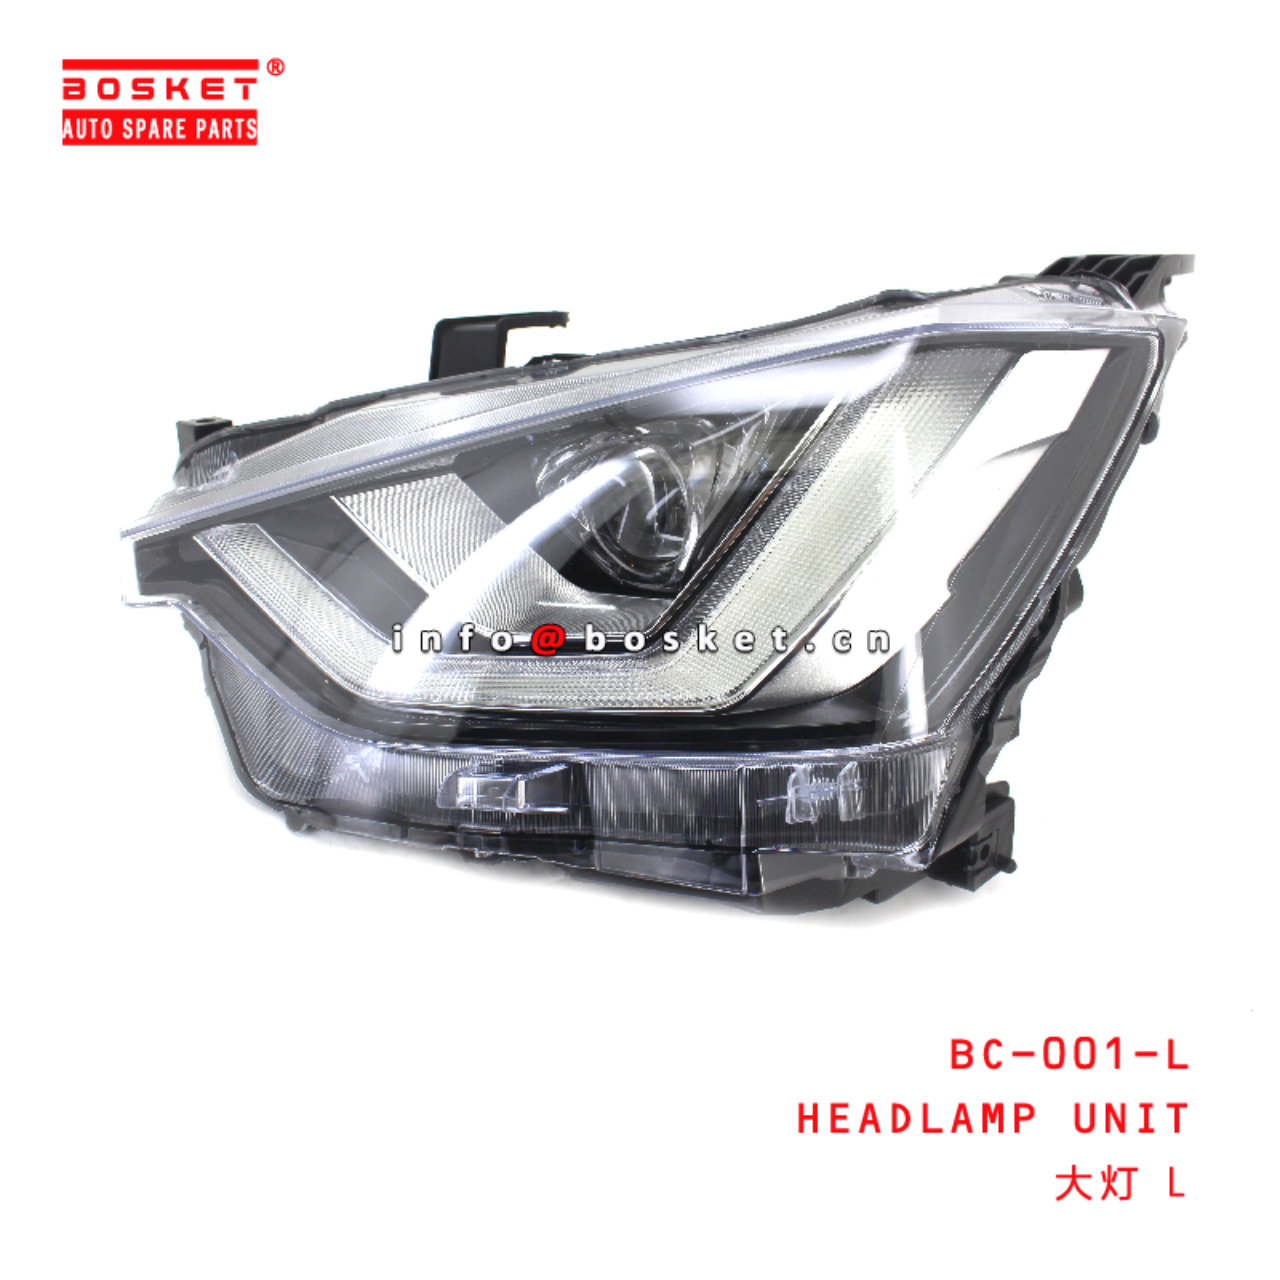 BC-001-L Headlamp Unit suitable for ISUZU DMAX2021  BC-001-L